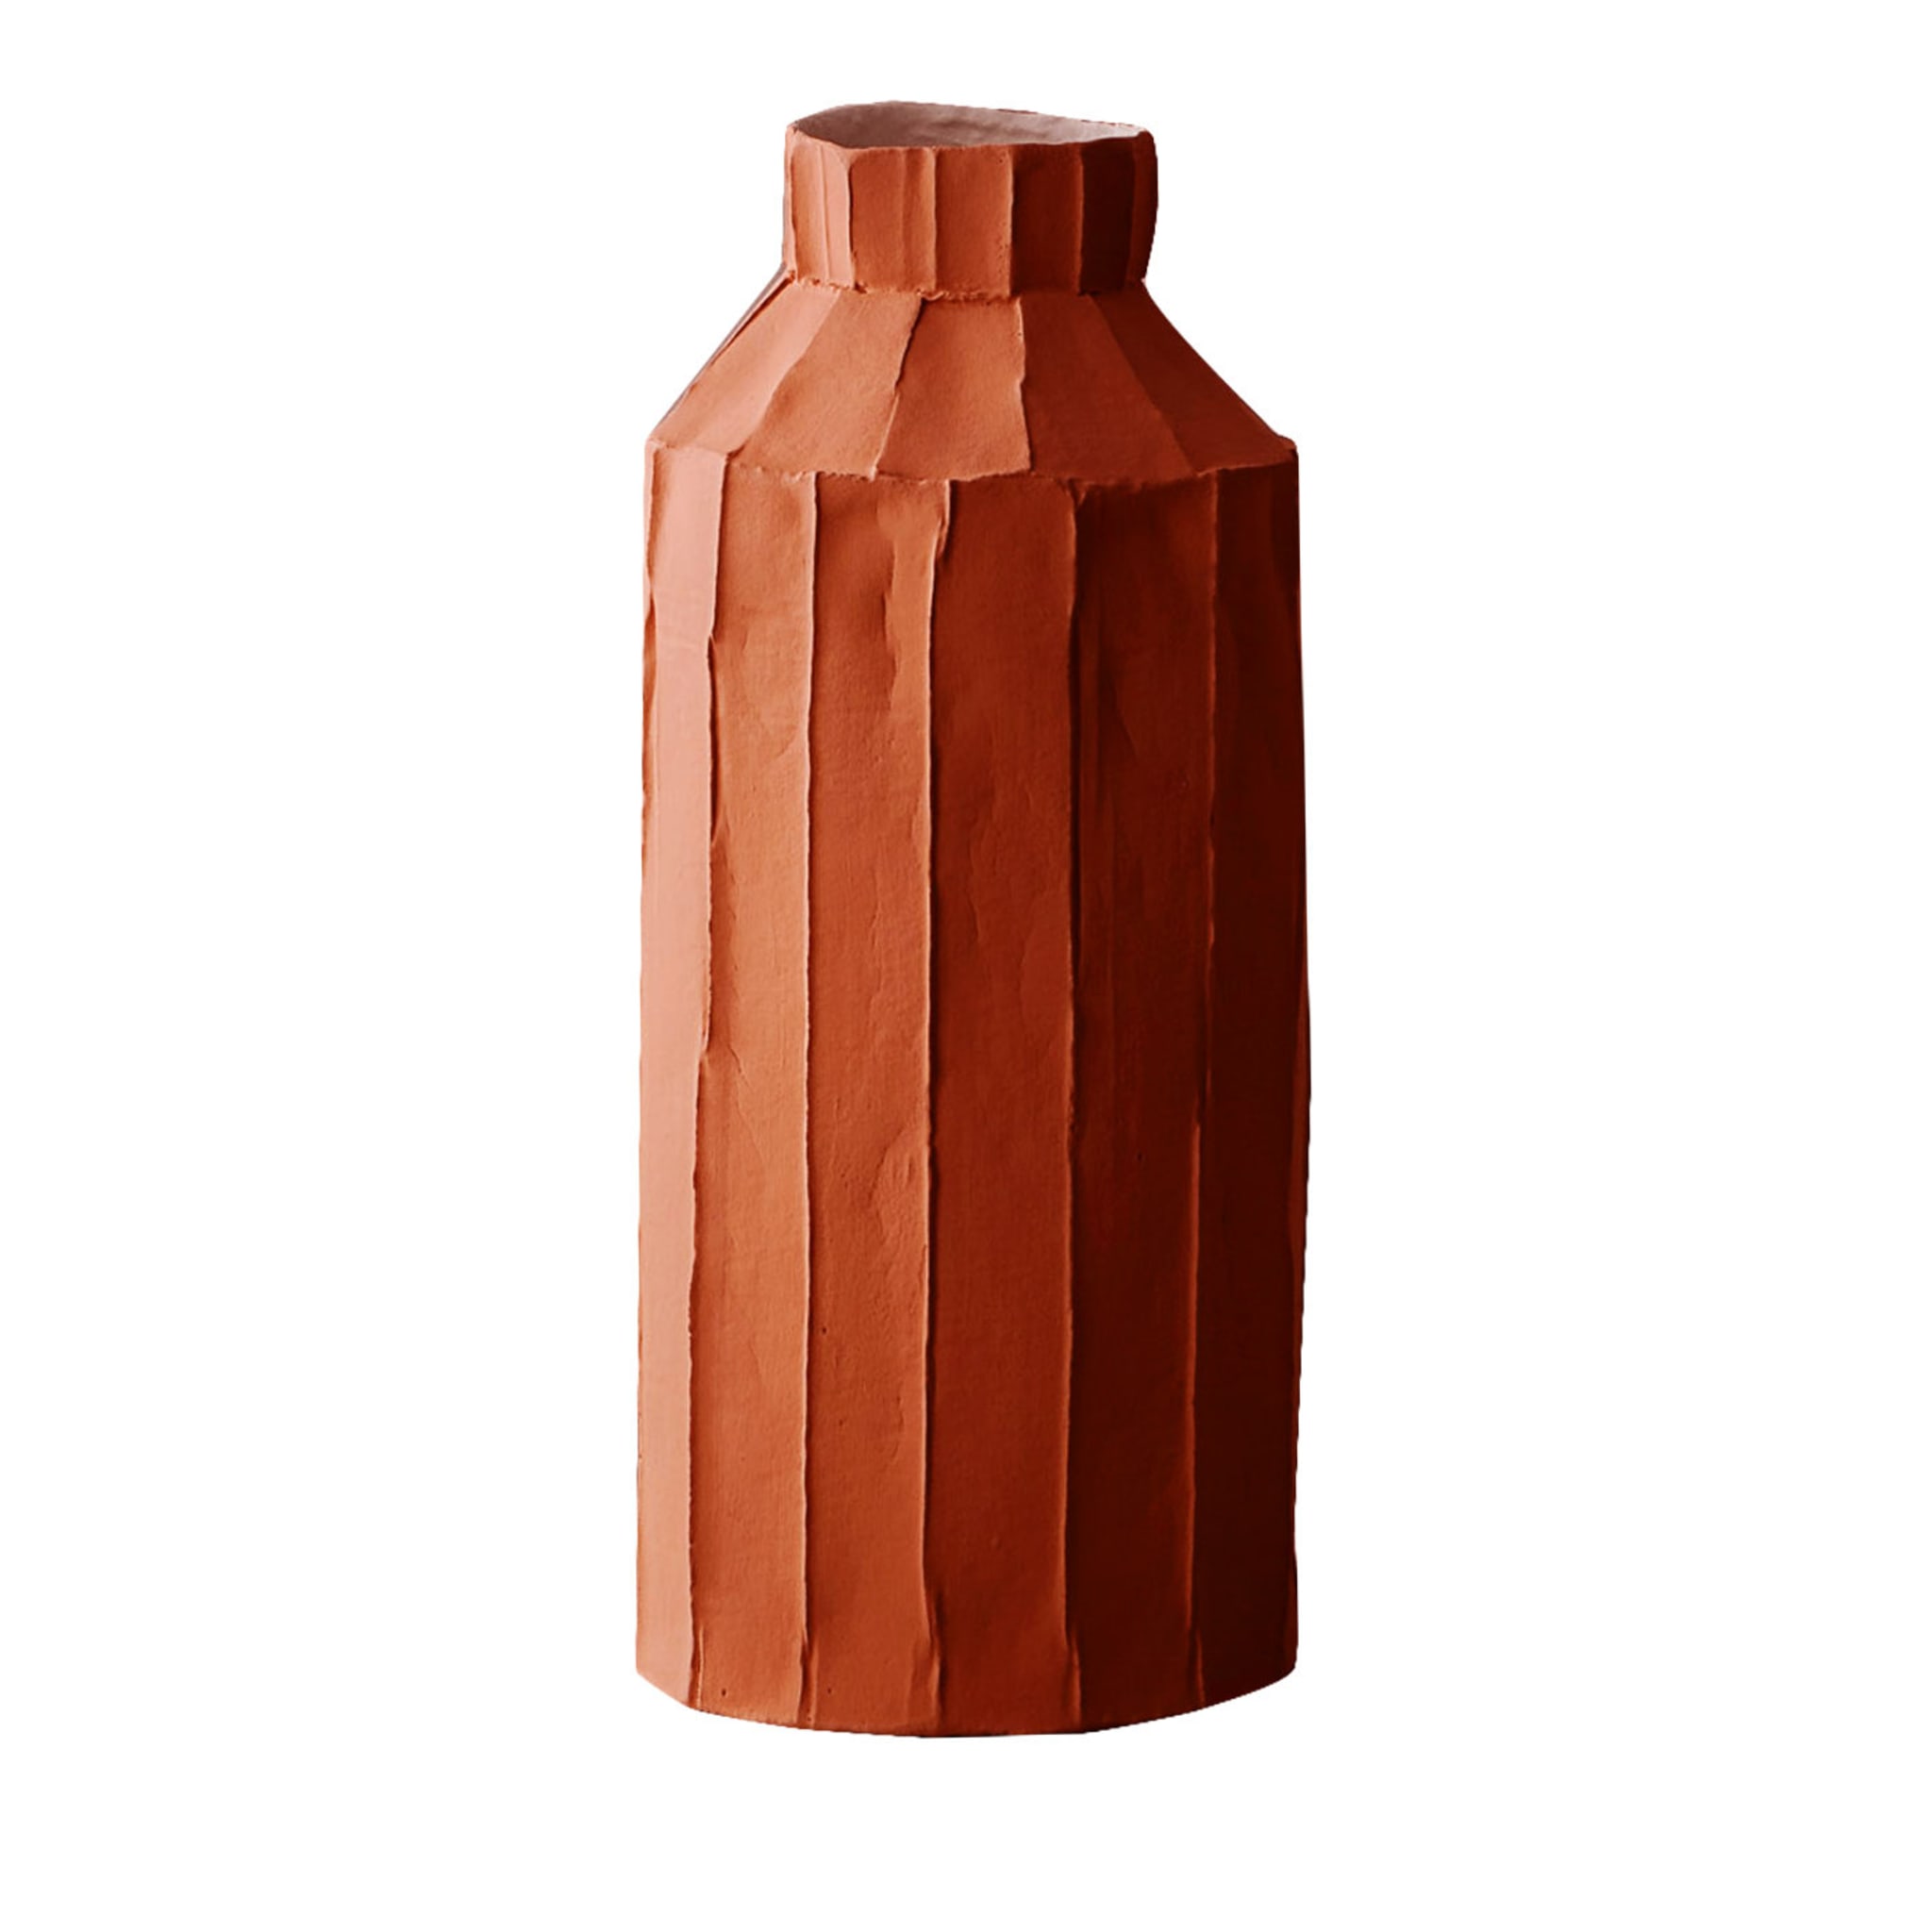 Cartocci Corteccia Fide Red Vase - Main view